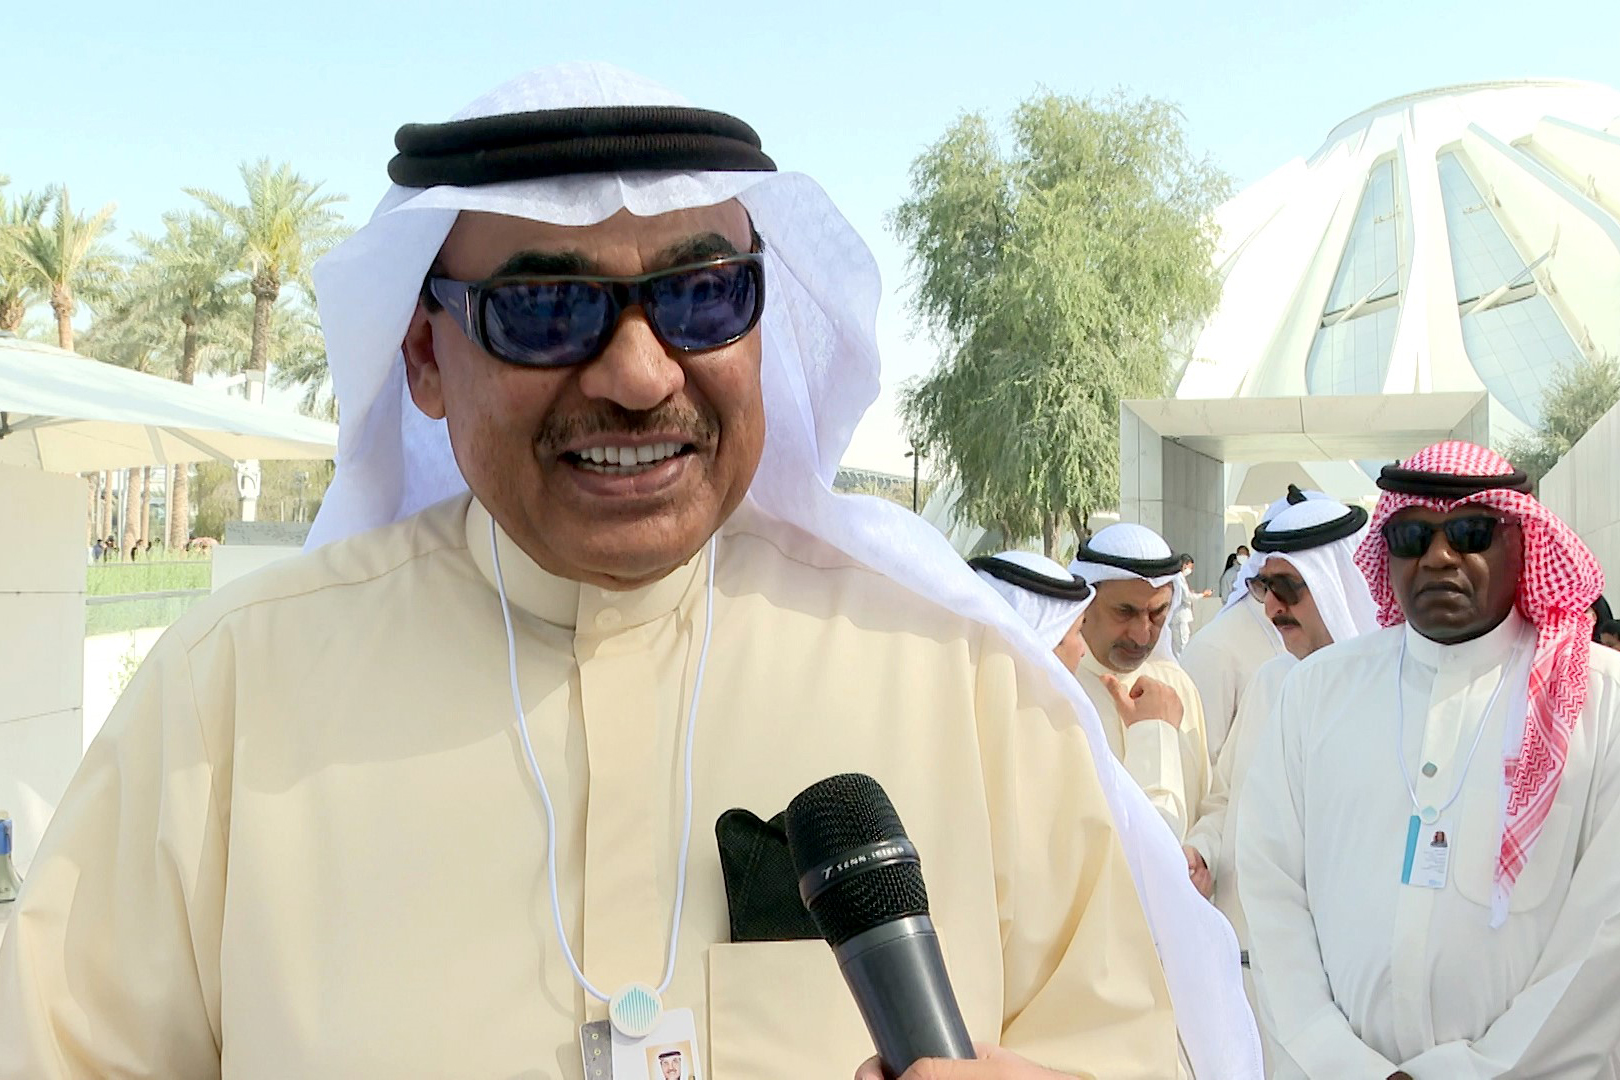 وكالة أنباء الإمارات - كلنا فخورون بإكسبو 2020 دبي: رئيس الوزراء الكويتي